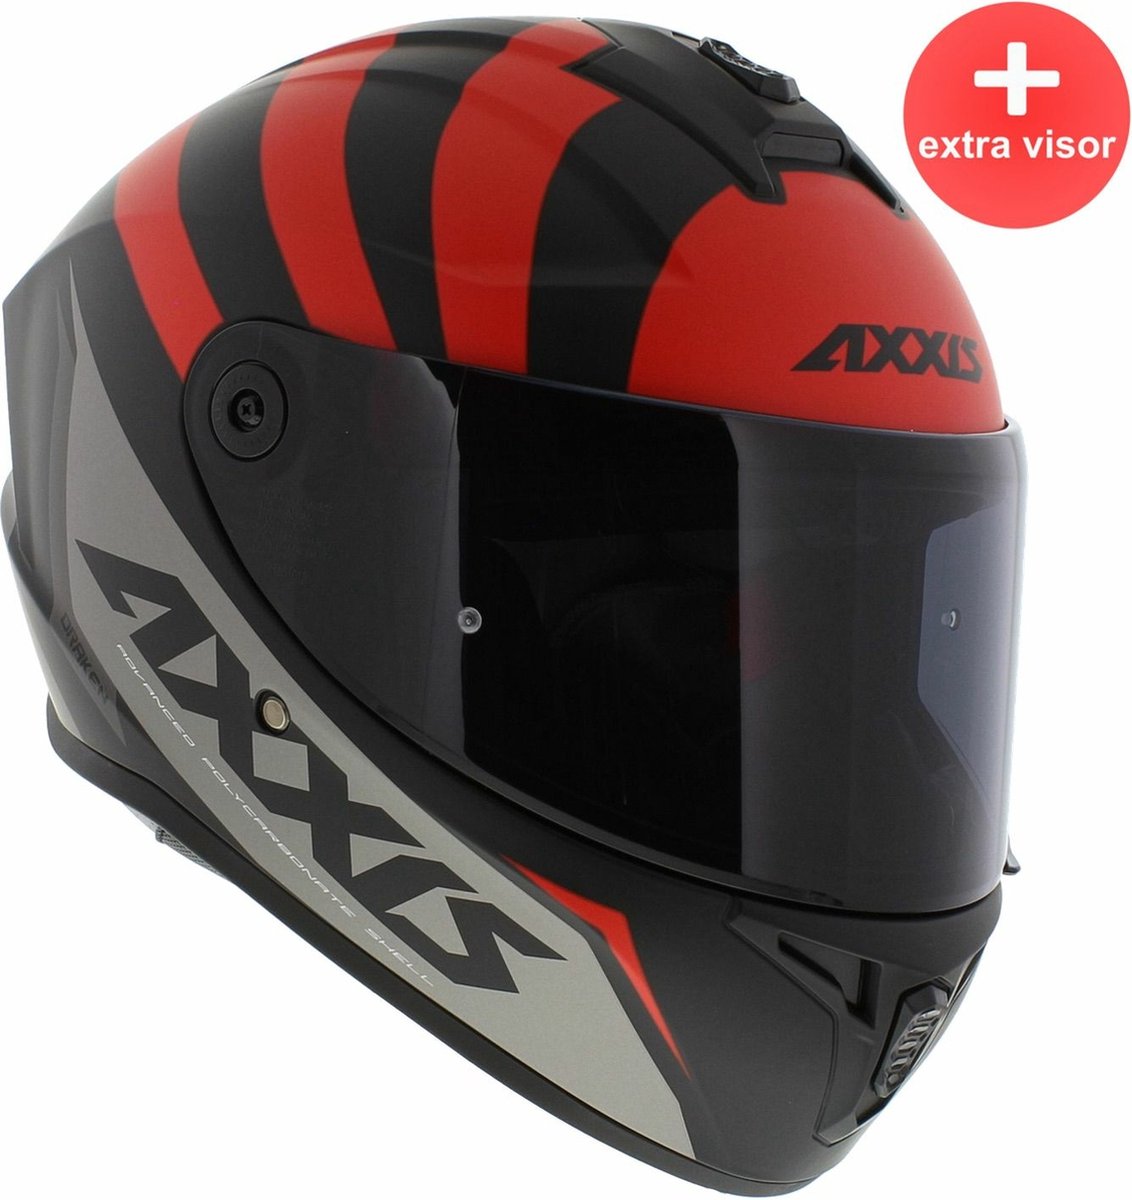 Axxis Draken S integraal helm Premier mat rood L + extra (donker) vizier in de doos!